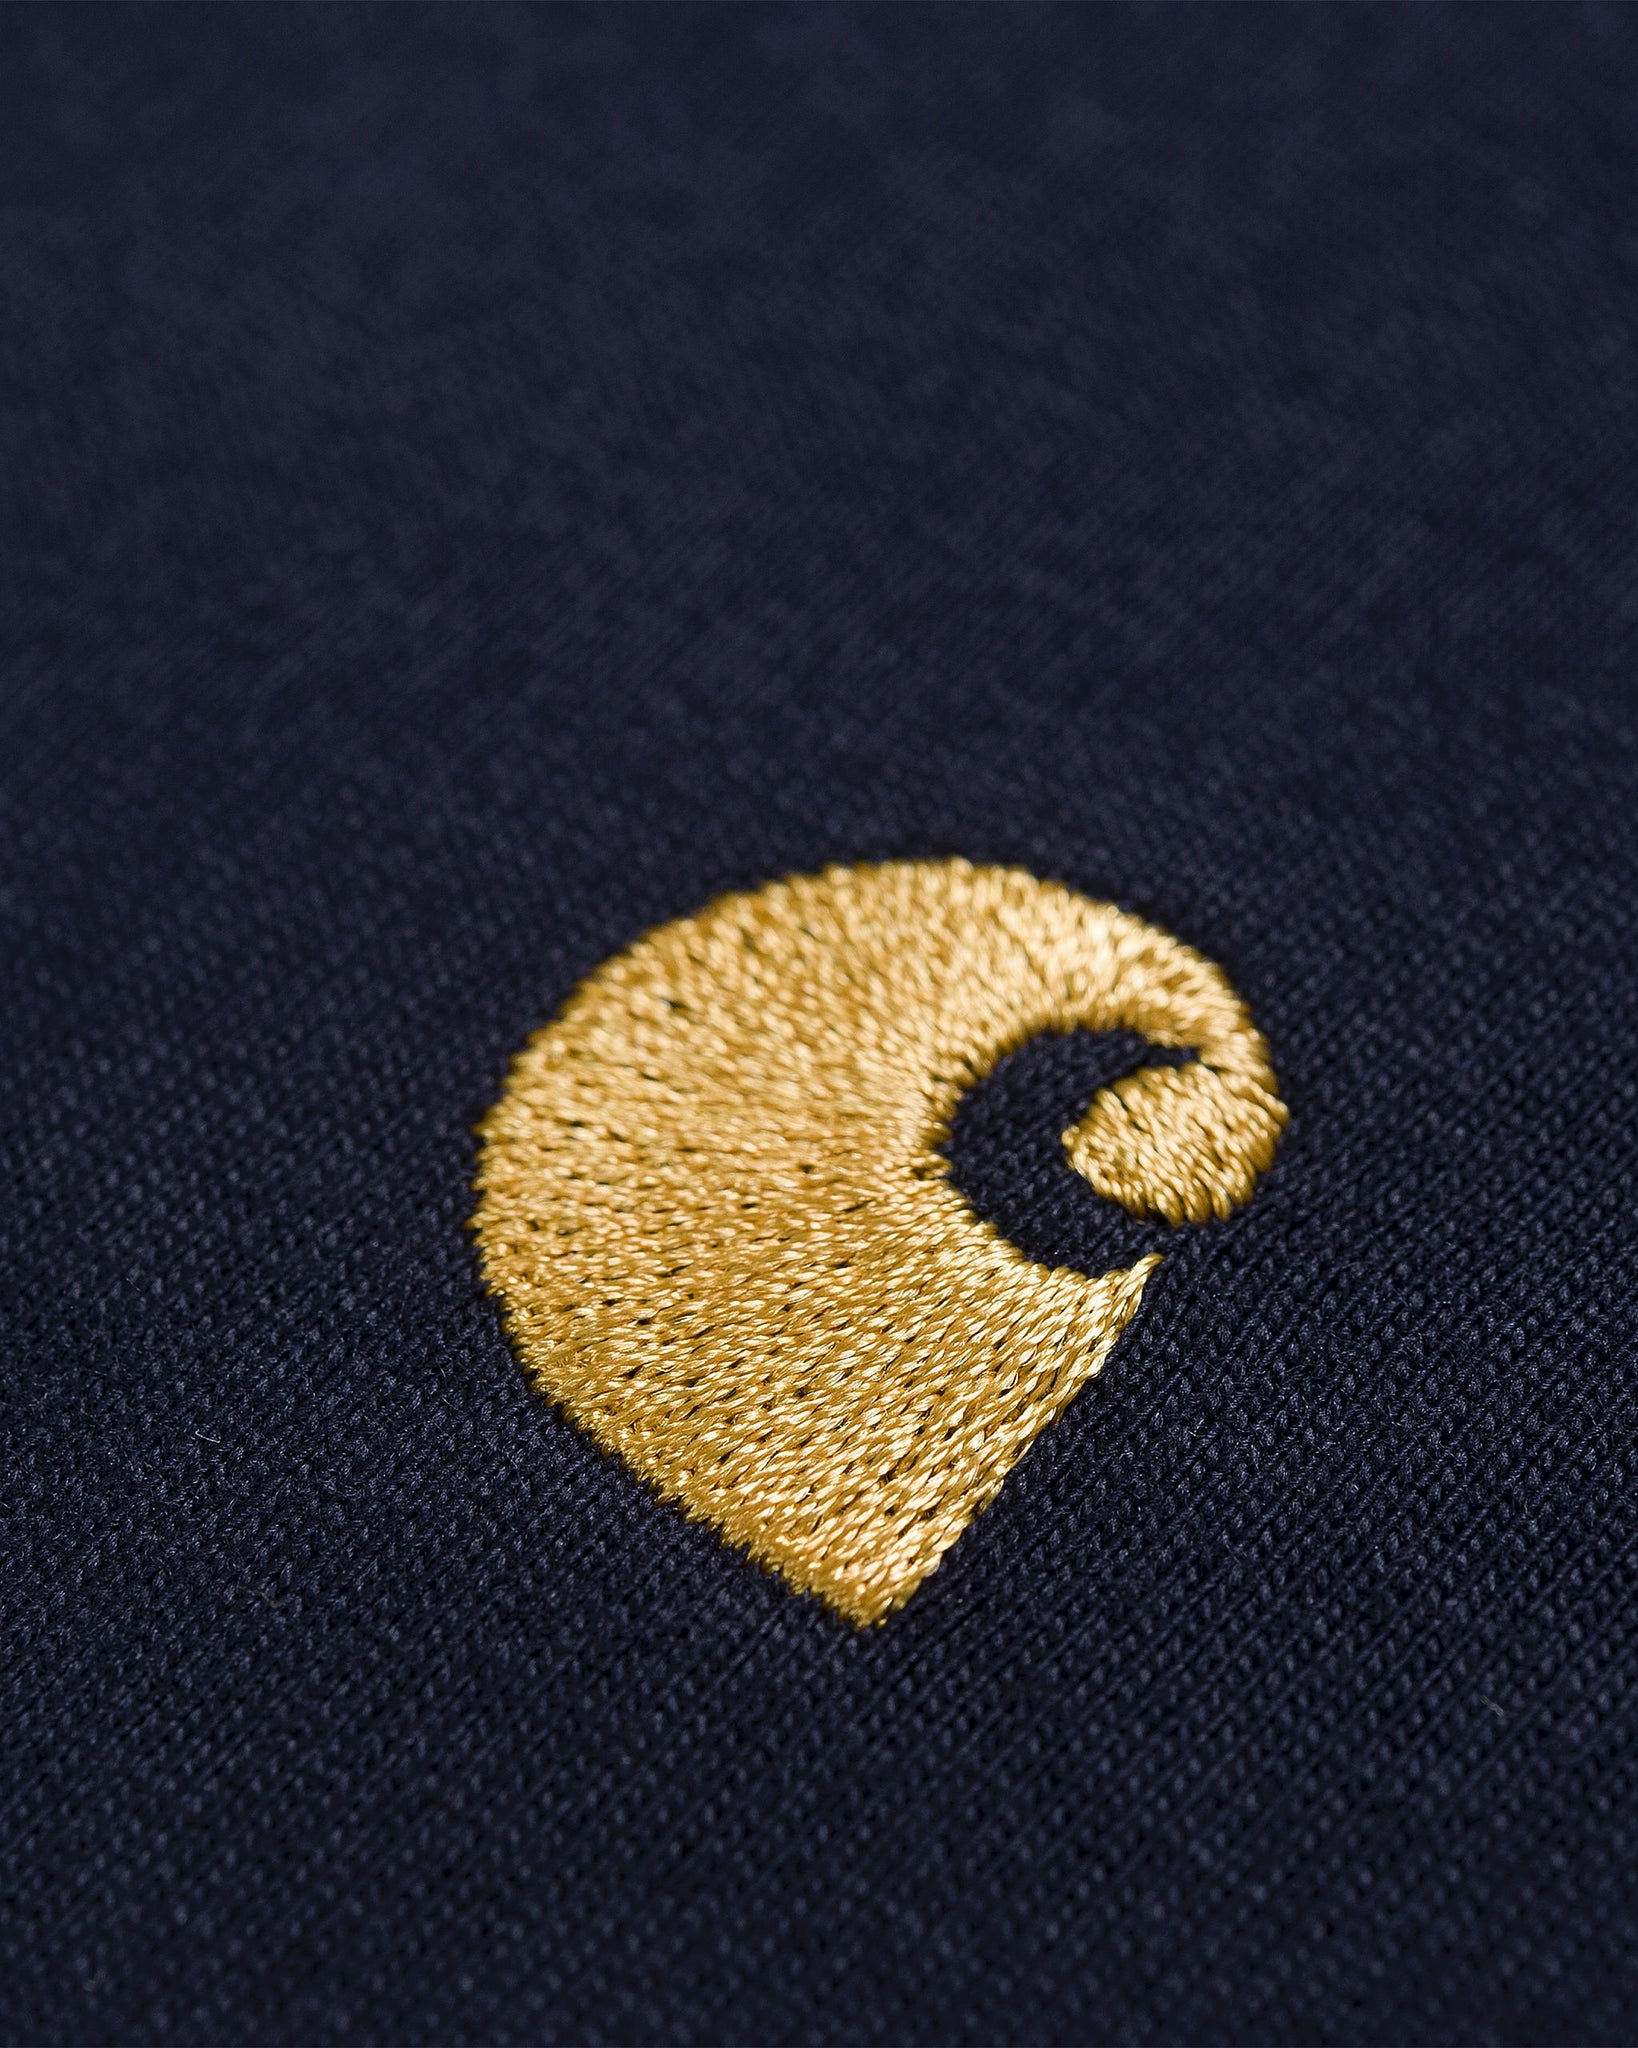 Camiseta SS Chase - Dark Navy/Gold